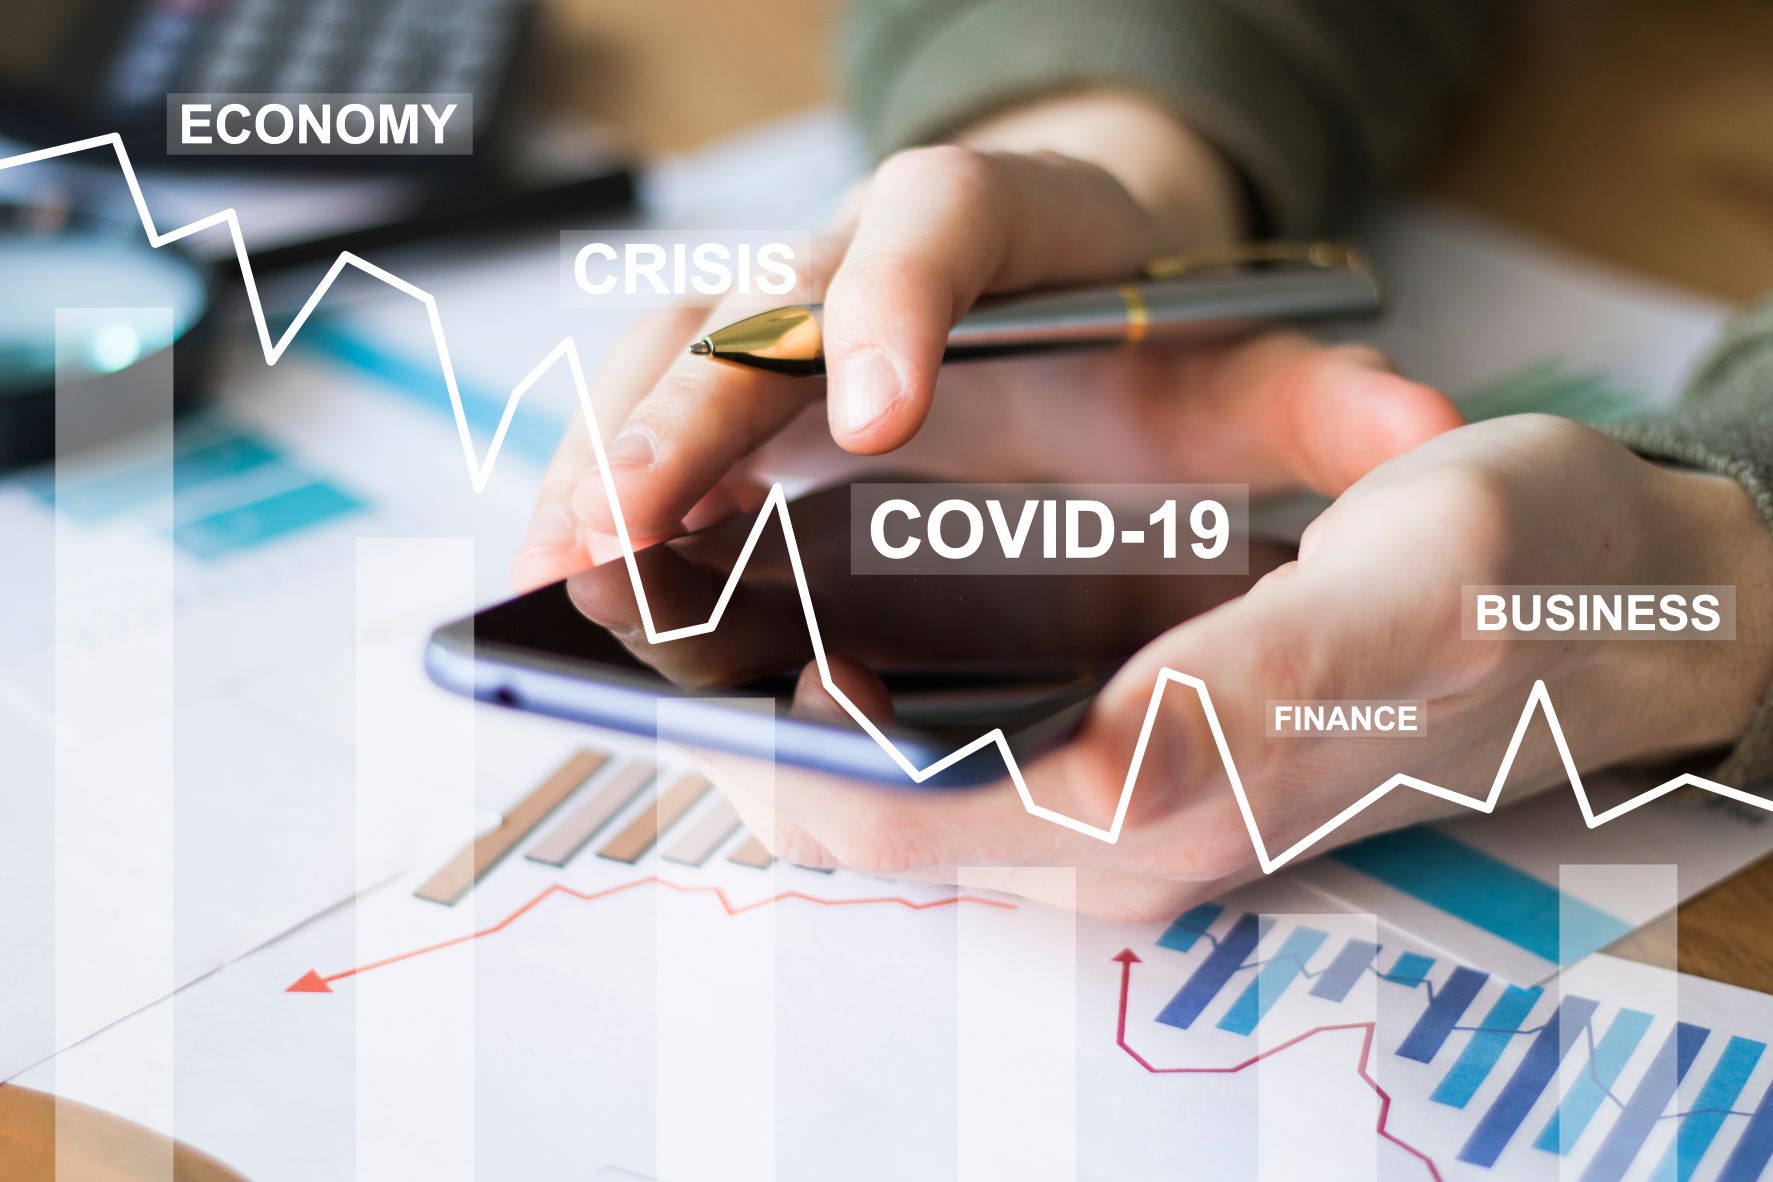 Ein Mann sitzt mit Handy und Kuli in der Hand über ausgedruckten Statistiken. Über das Foto ist ein gezeichneter Graph mit Abwärtstrend gezeichnet und mit den Worten Economy, Crisis, Covid-19, Finance, Business beschriftet.